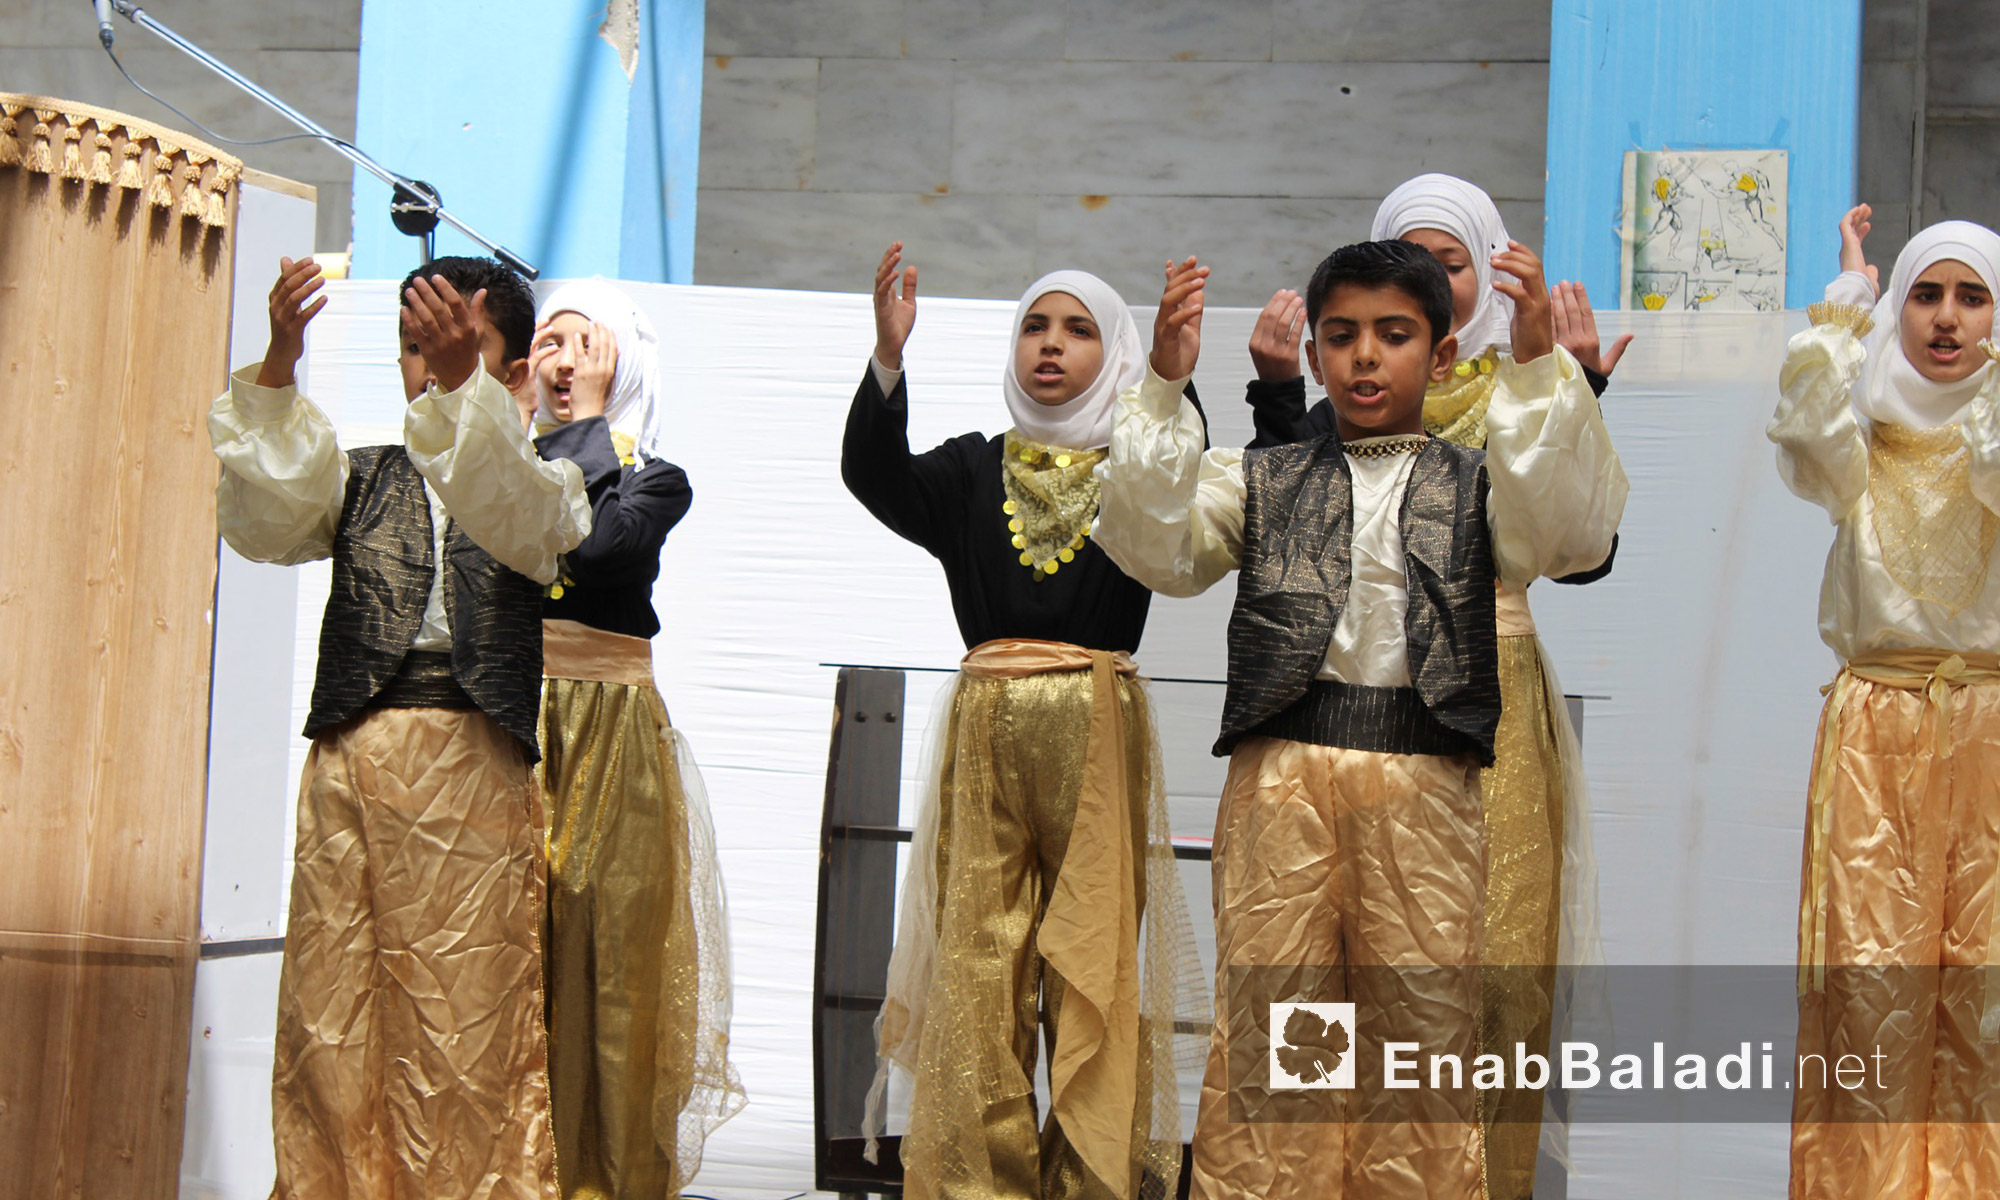 مشهد راقص لطلاب مجموعة "علمني" التعليمية في حي الوعر المحاصر بحمص - الاثنين 25 تموز (عنب بلدي)